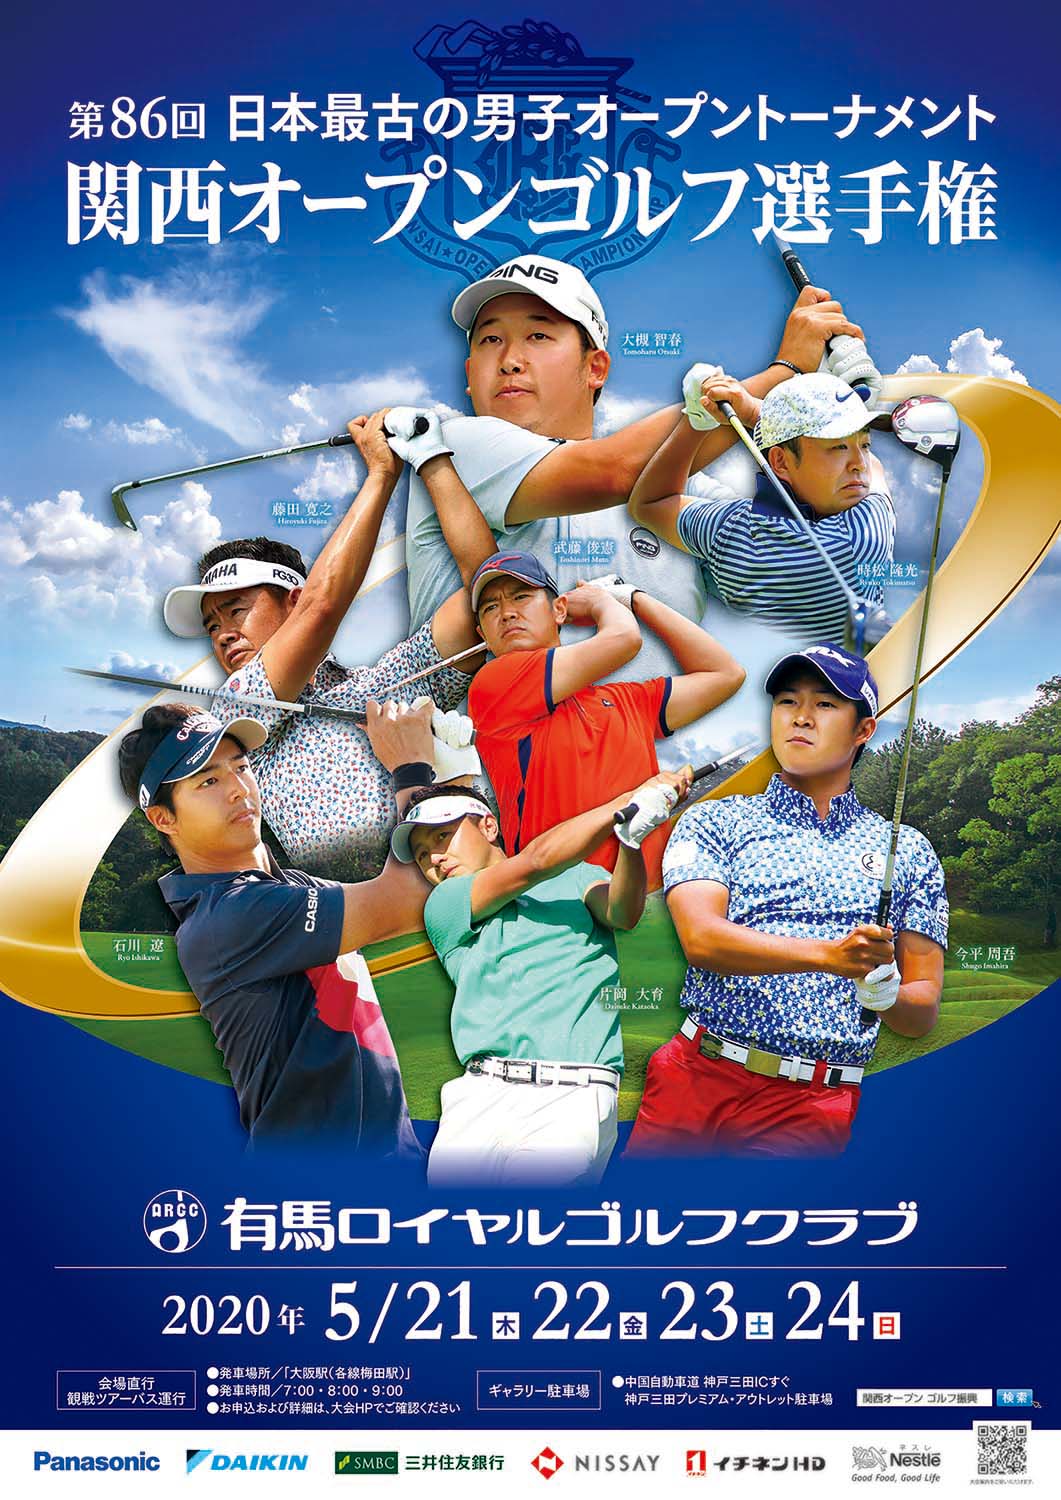 日本女子オープンゴルフ選手権 チケット(4枚綴り)+spbgp44.ru